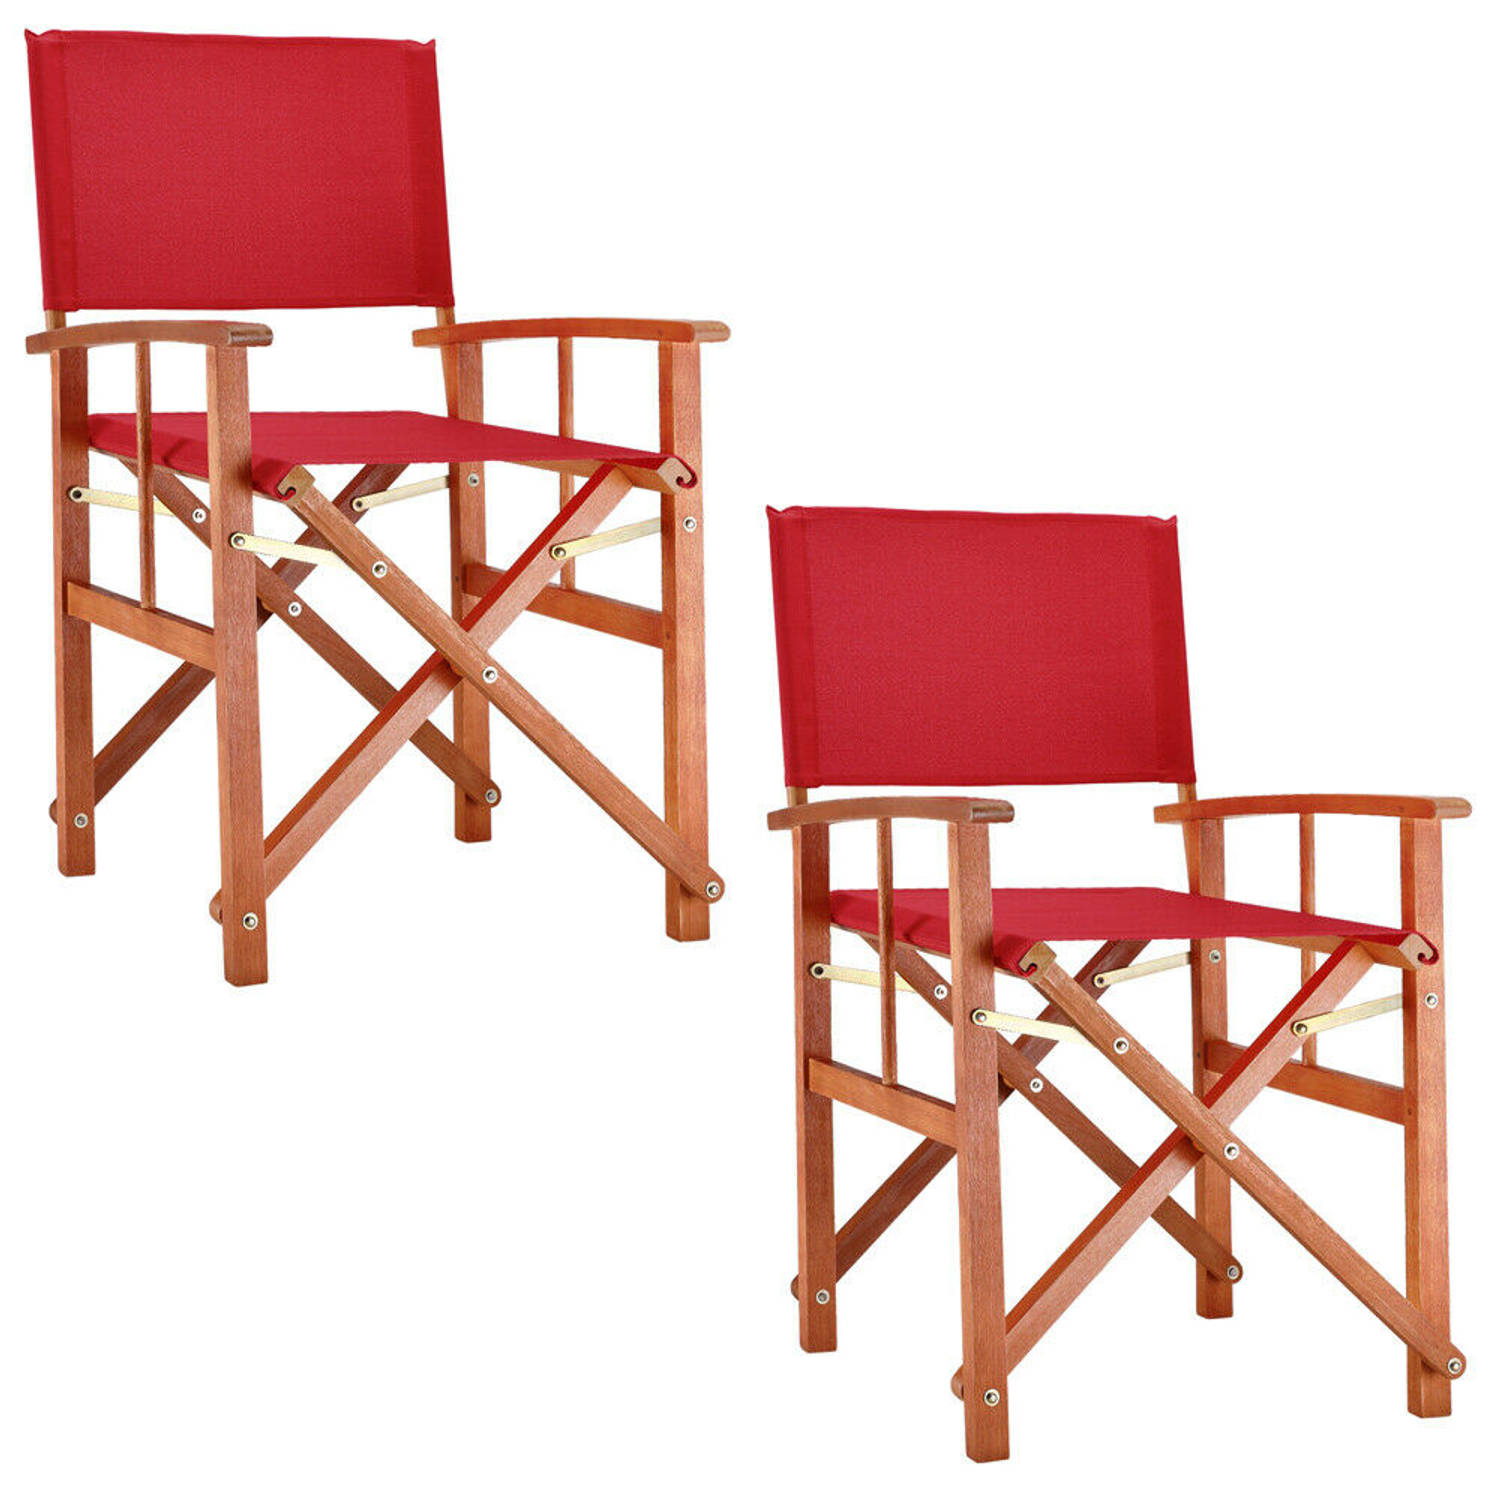 Regisseursstoel, set 2, klapstoel, vouwstoel, rood, duurzaam, eucalyptushout, waterafstotend stof, | Blokker